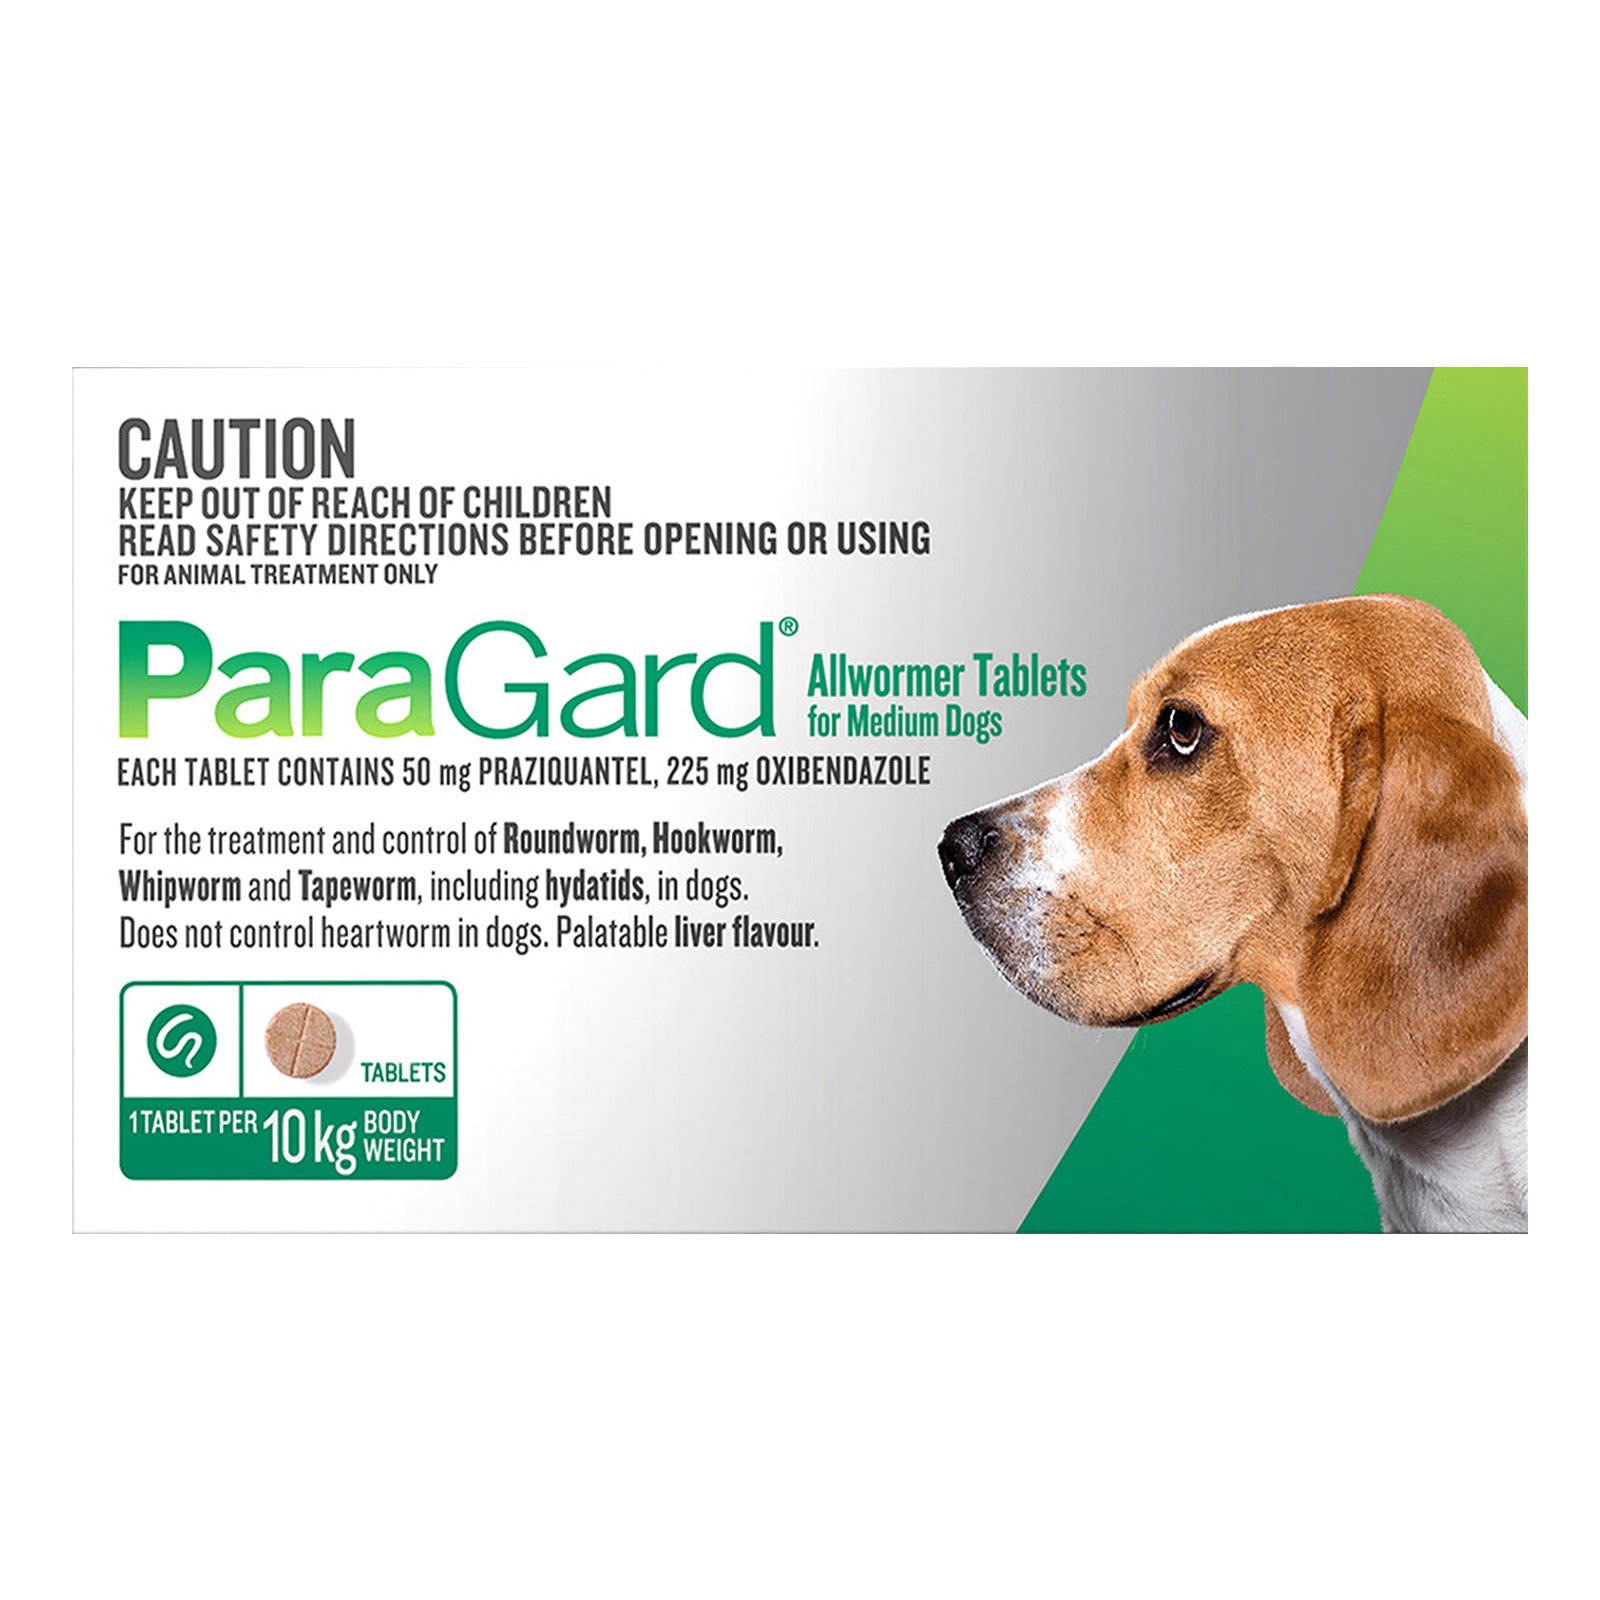 paragard-med-dogs-10kg-green.jpg